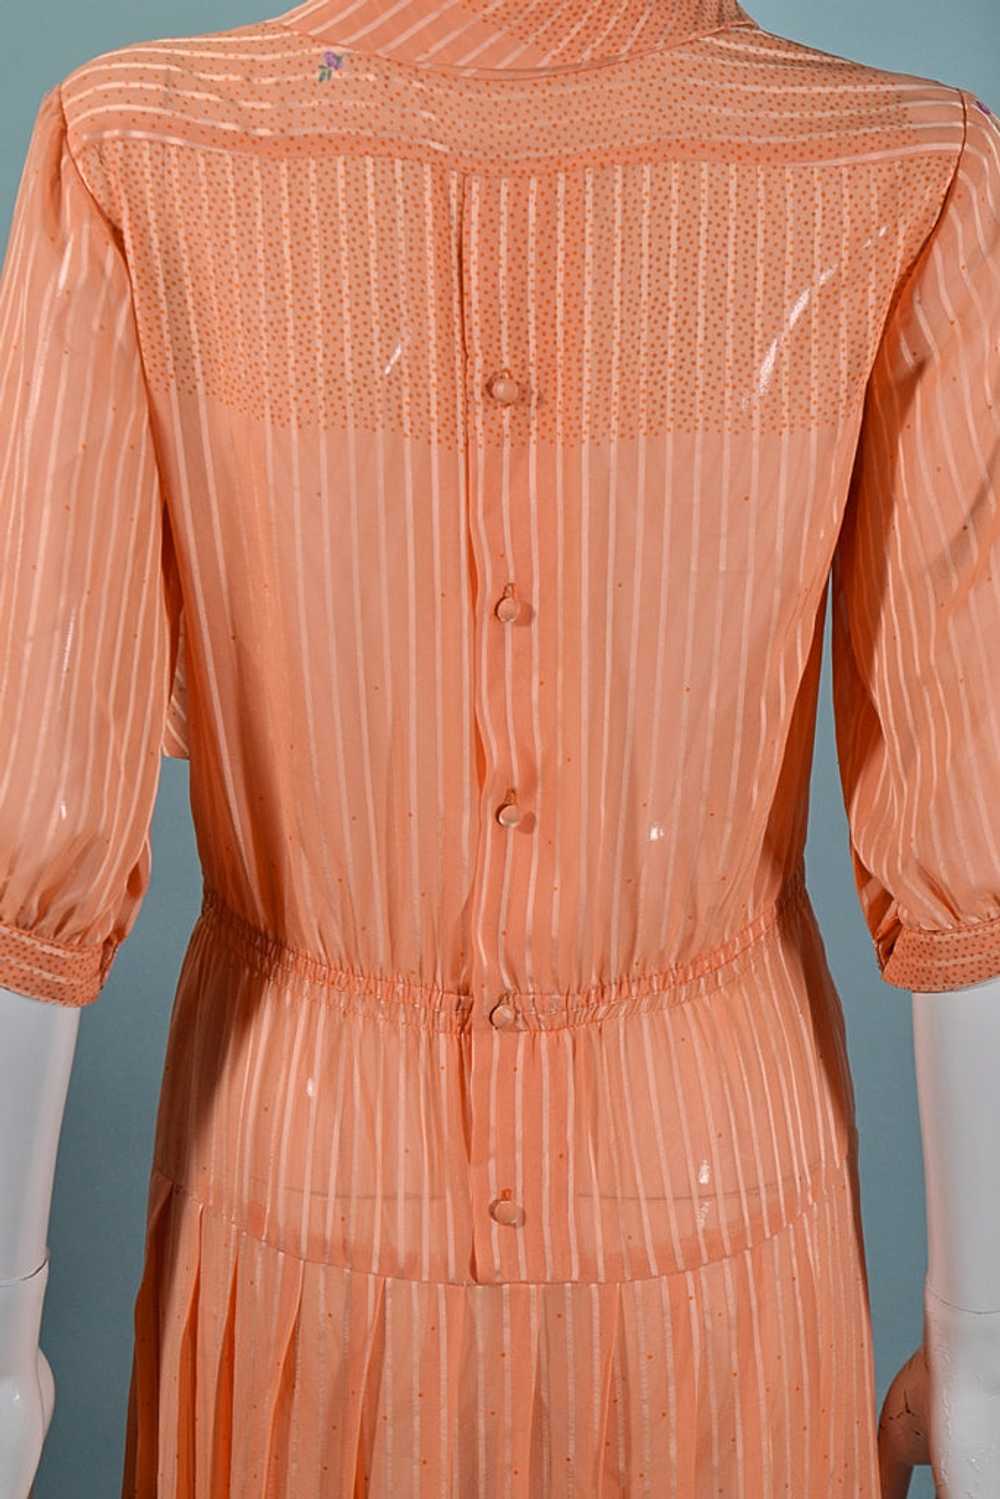 Vintage 70s Does 30s Floral Print Dress, Peach Se… - image 9